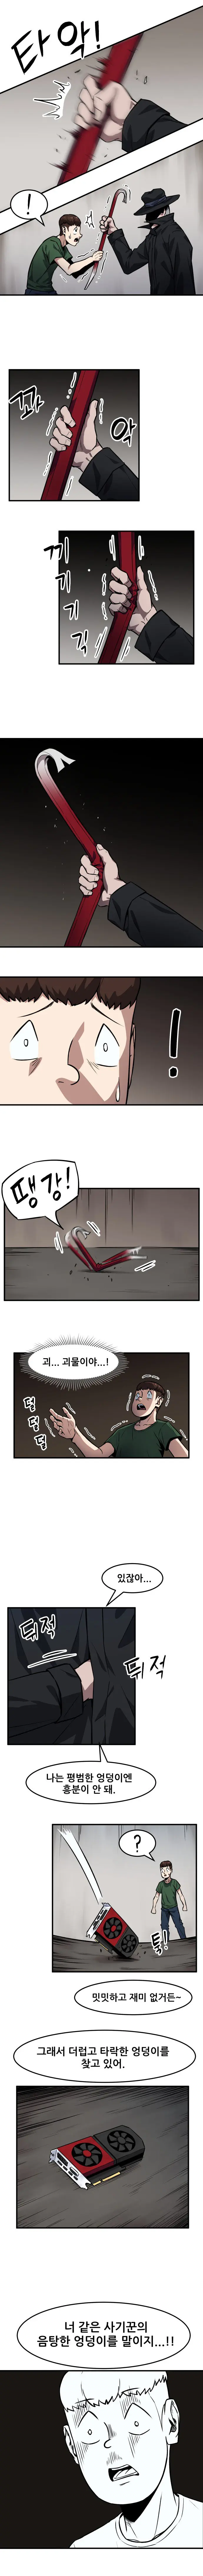 엉덩이 사냥꾼 만화 | mbong.kr 엠봉